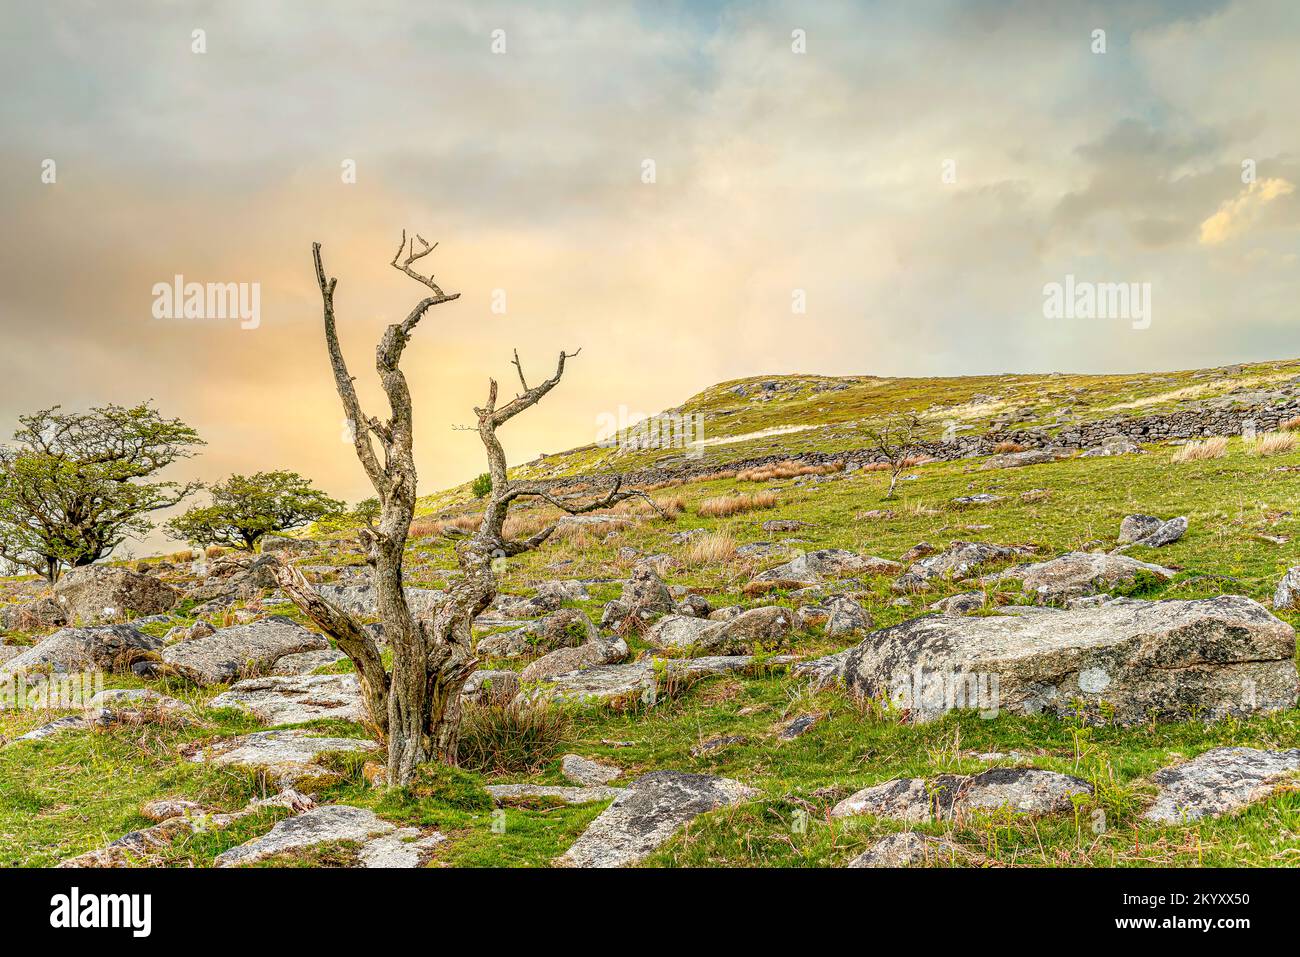 Arbre mort dans un paysage au parc national de Dartmoor, Devon, Angleterre, Royaume-Uni Banque D'Images